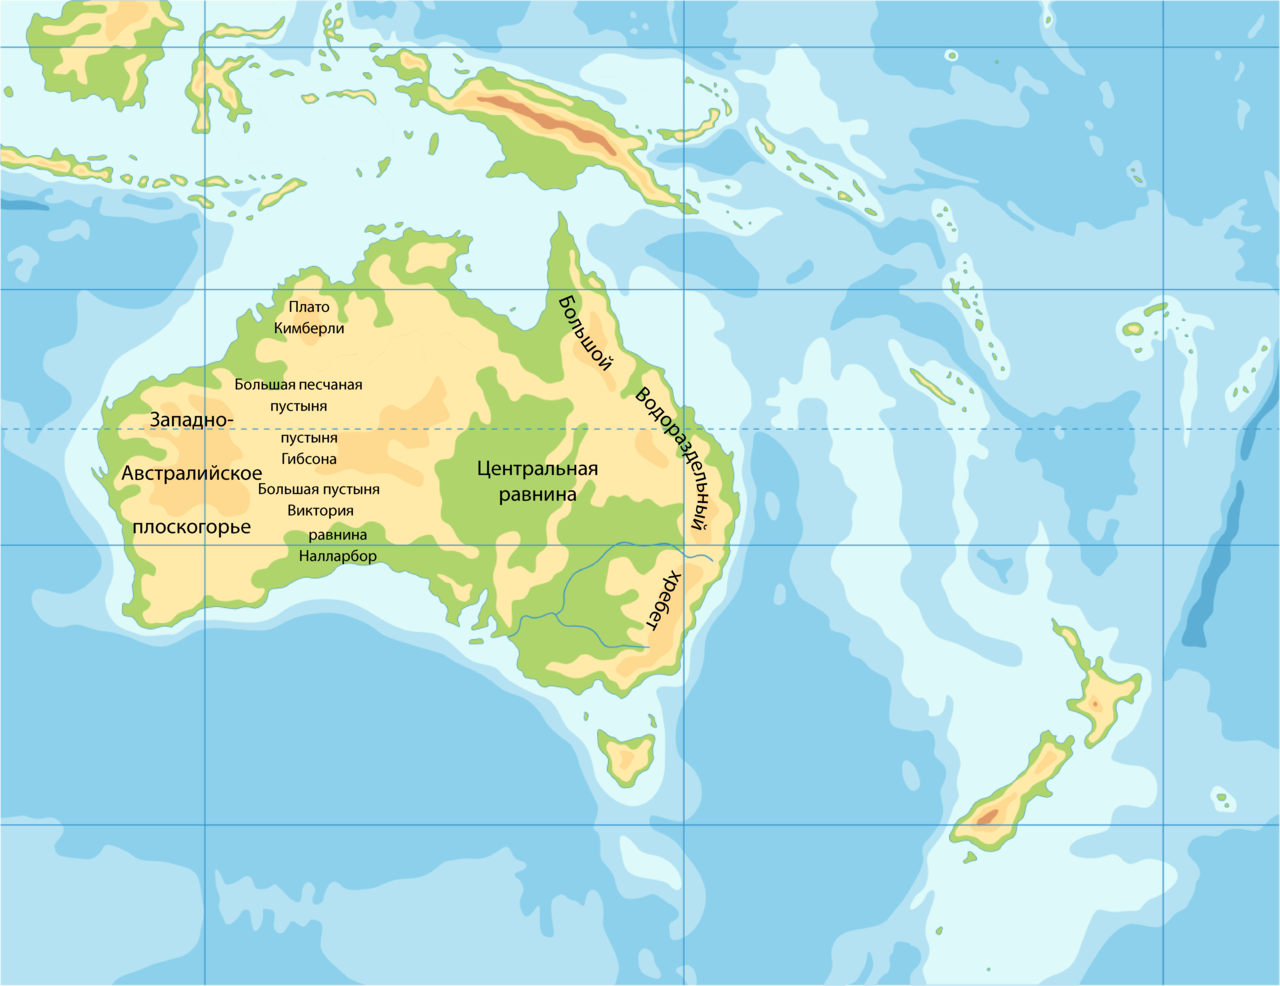 Большой водораздельный где находится на карте. Формы рельефа Австралии на карте. Центральная равнина Австралии на карте контурной. Западно австралийское плоскогорье на карте Австралии. Западноавстралийское пласкогорье на карте.